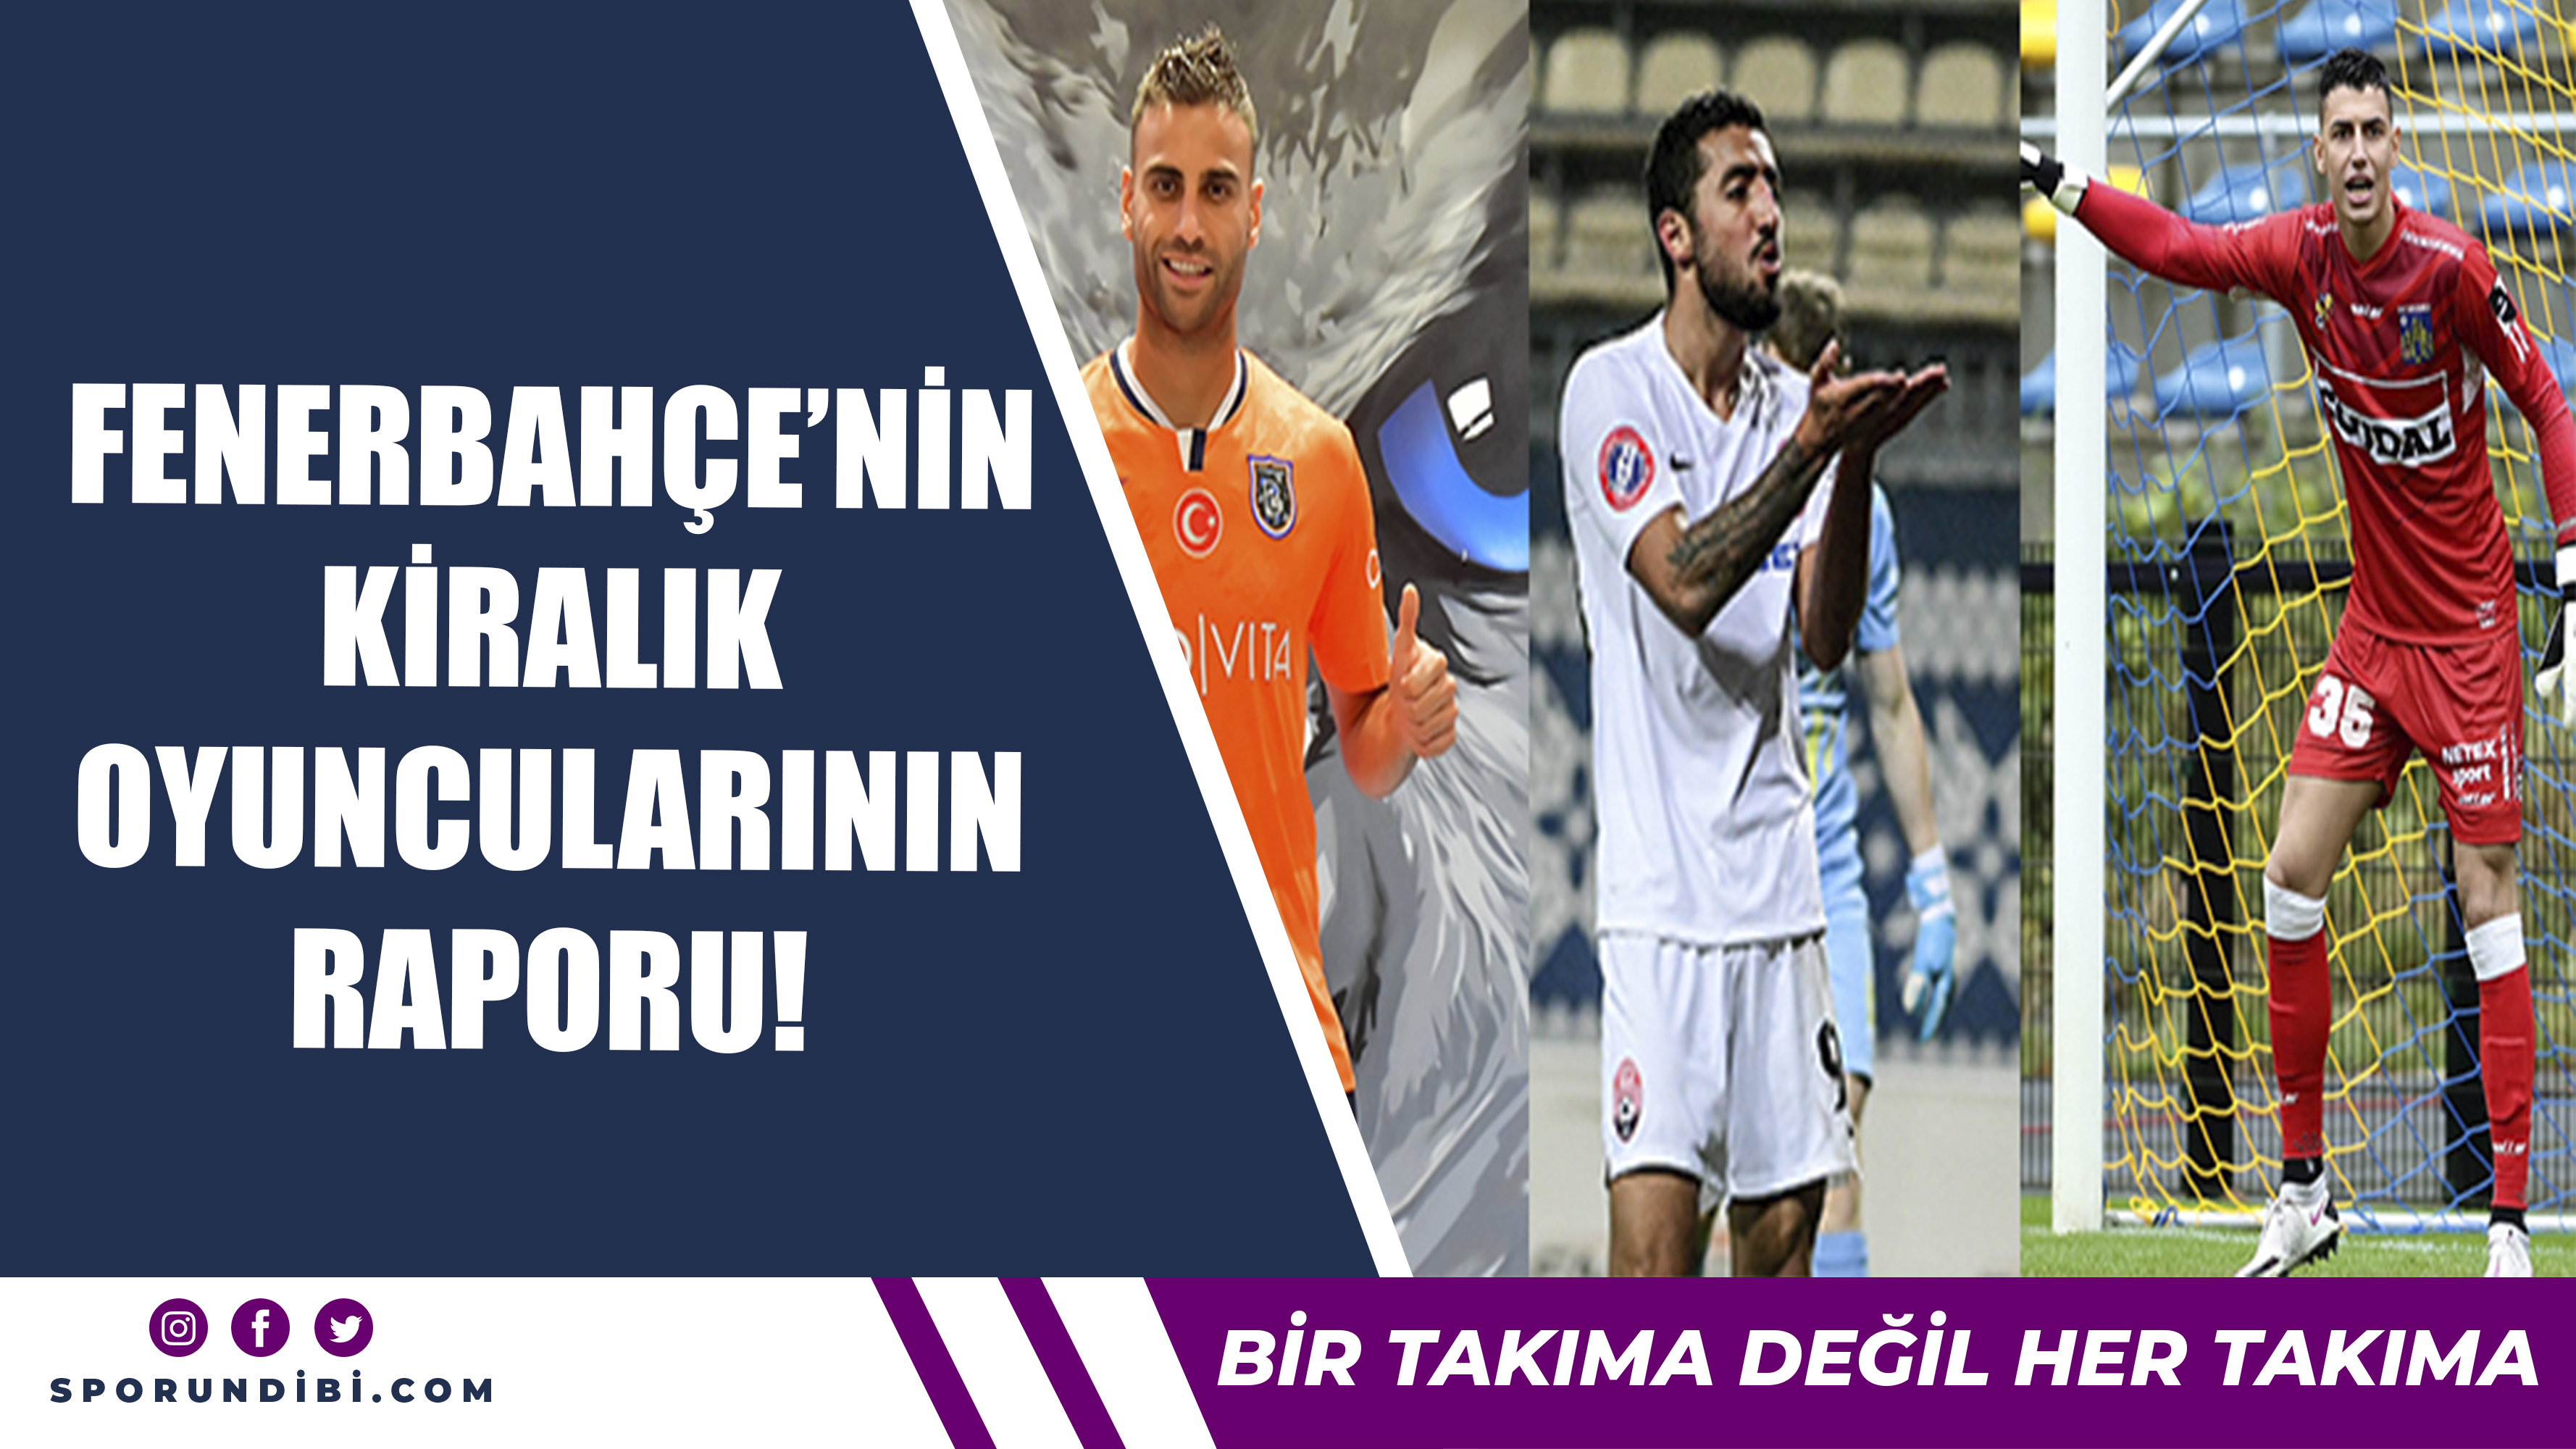 Fenerbahçe'nin Kiralık Oyuncularının Raporu